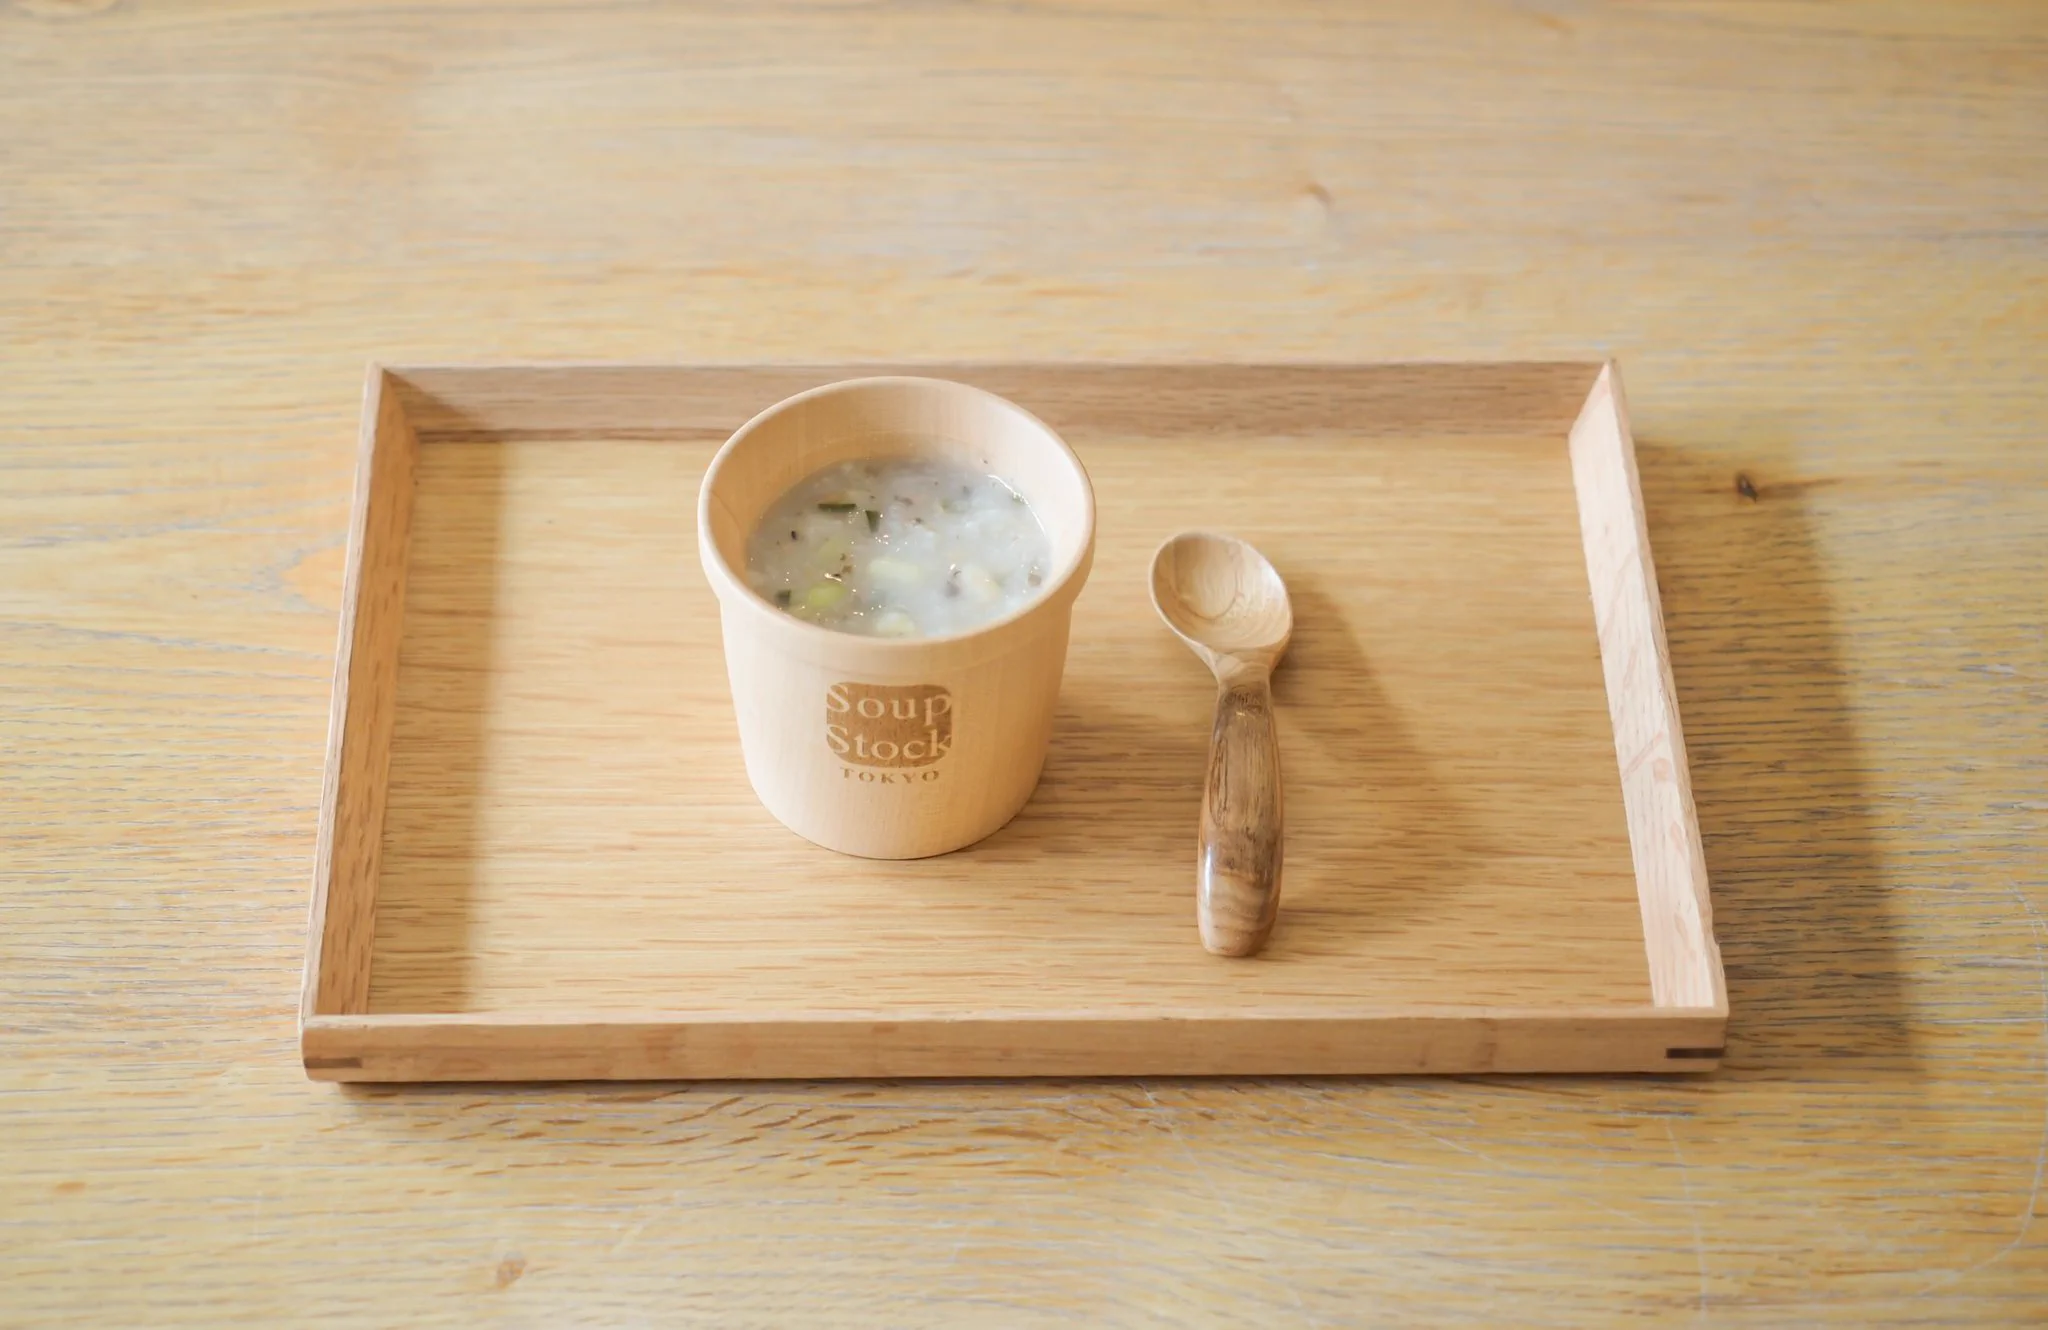 スープストック東京から、小さなお客さまへ「離乳食(後期)のスープ無料提供」のお知らせ。